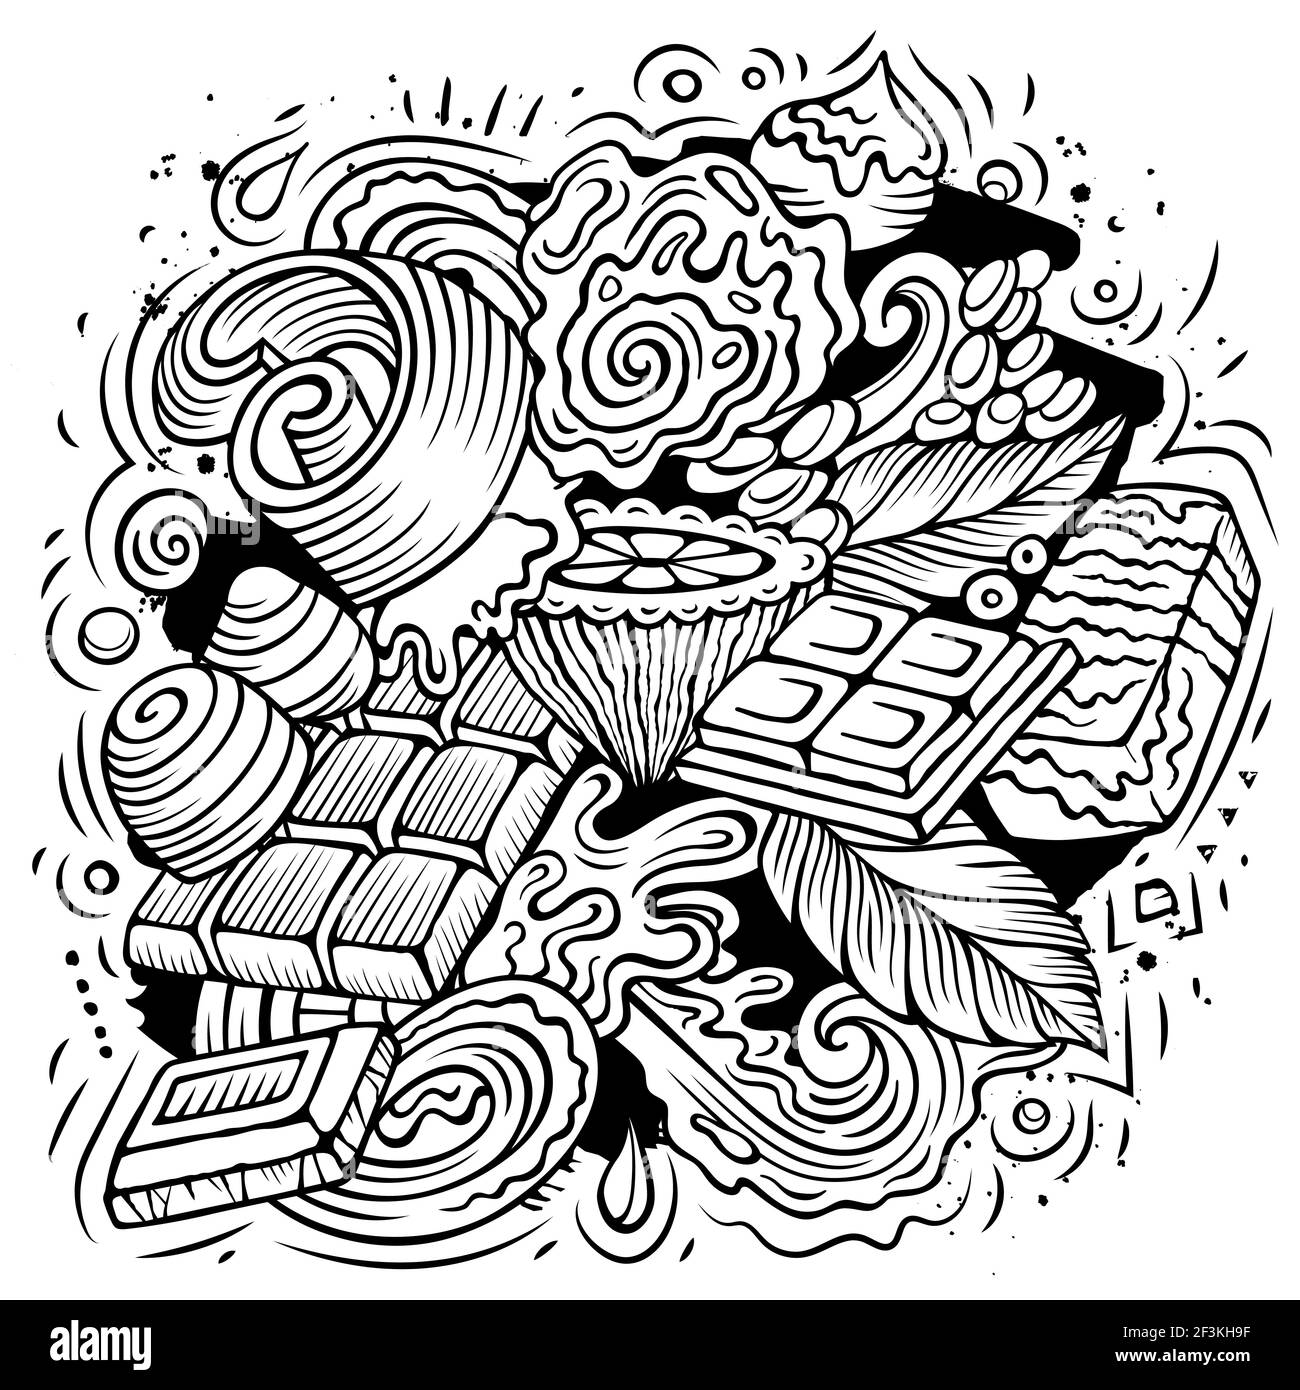 Illustrazione di doodles vettoriali disegnati a mano di cioccolato. Poster Choco. Elementi dolci e oggetti sfondo cartoon. Immagine divertente dell'arte di linea Illustrazione Vettoriale